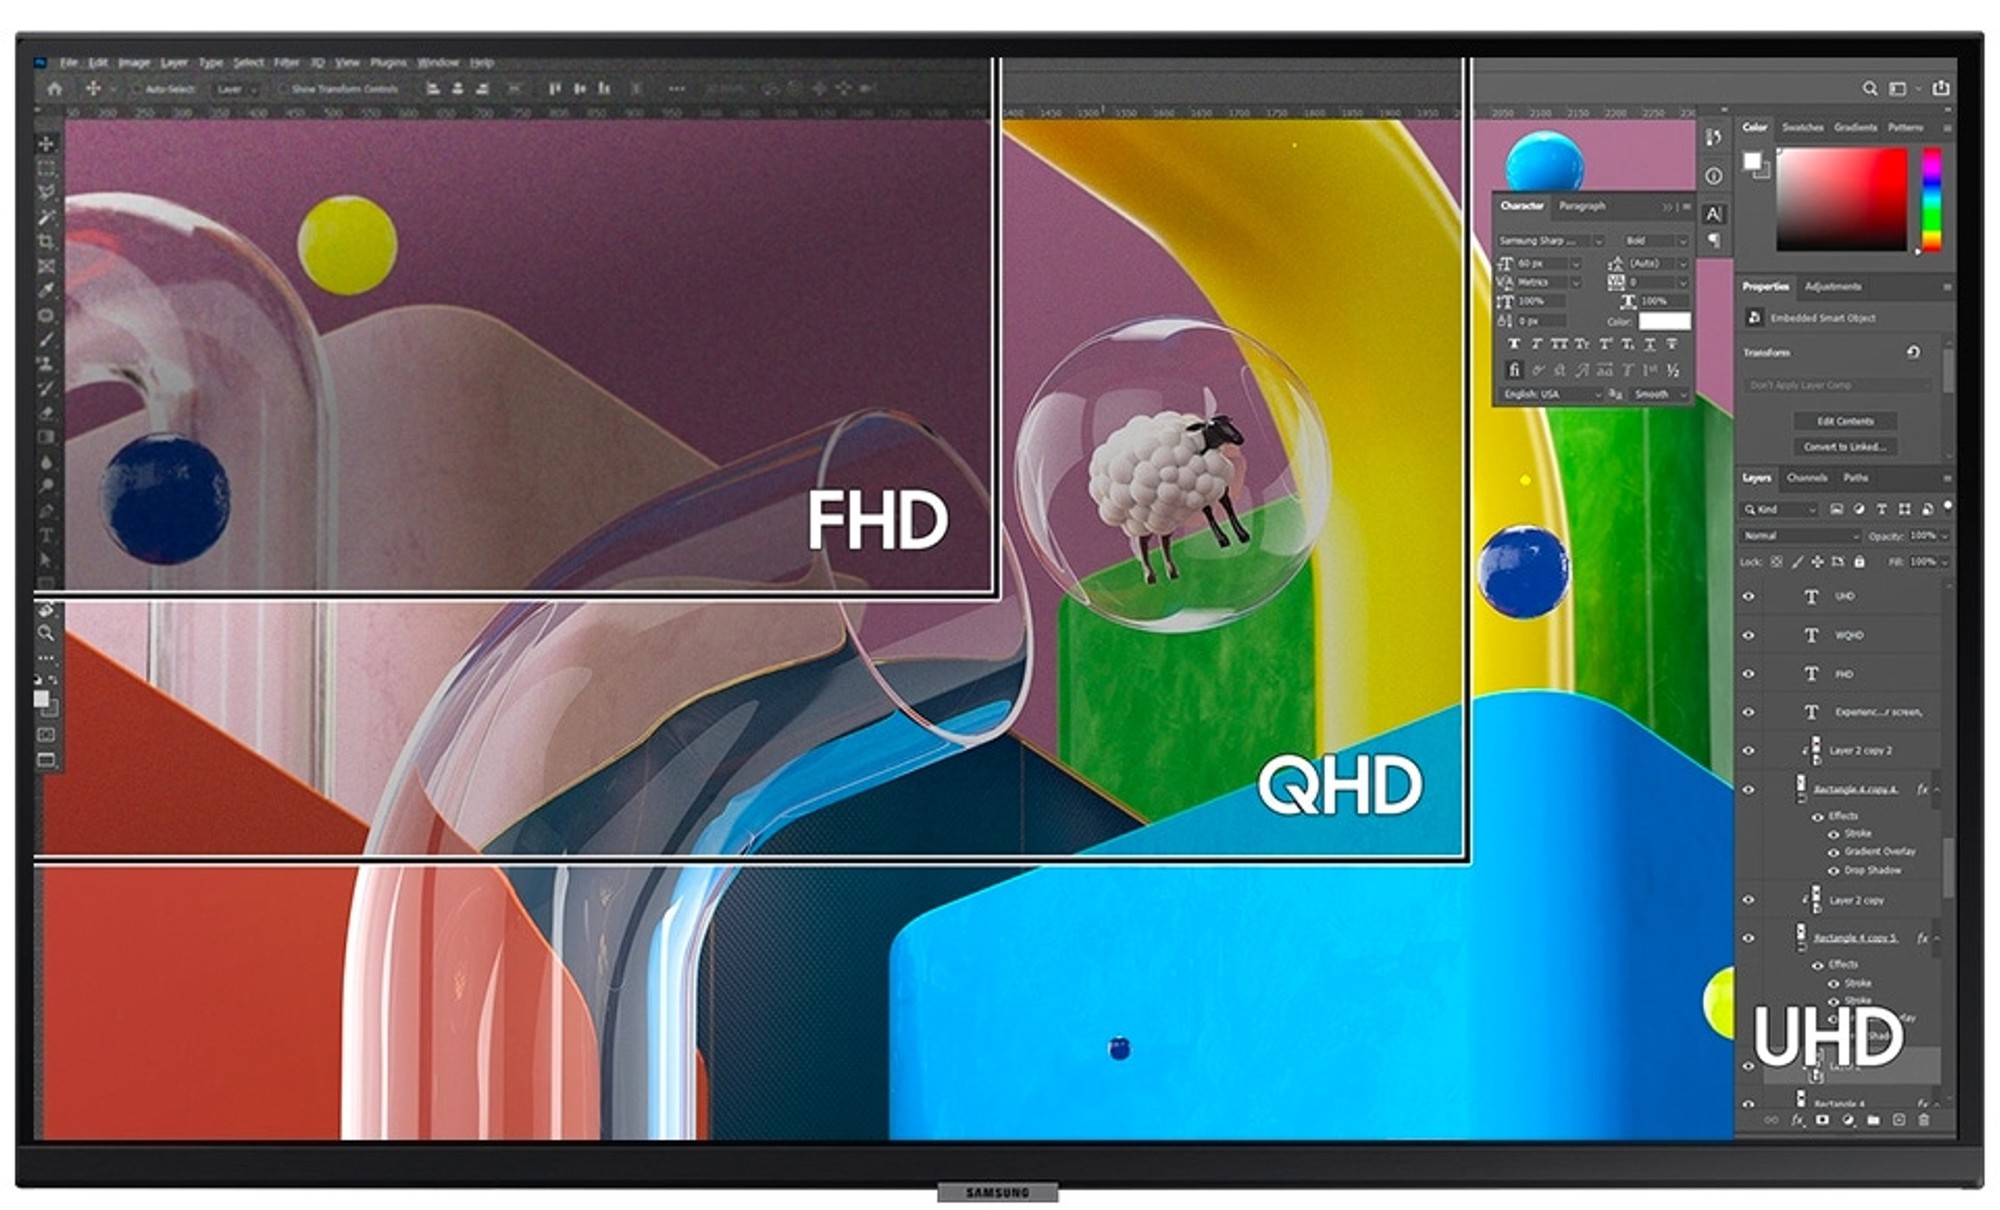 Samsung UR55 và Viewfinity S8: 2 mẫu màn hình đồ họa của Samsung dành cho người mới bắt đầu - Ảnh 1.